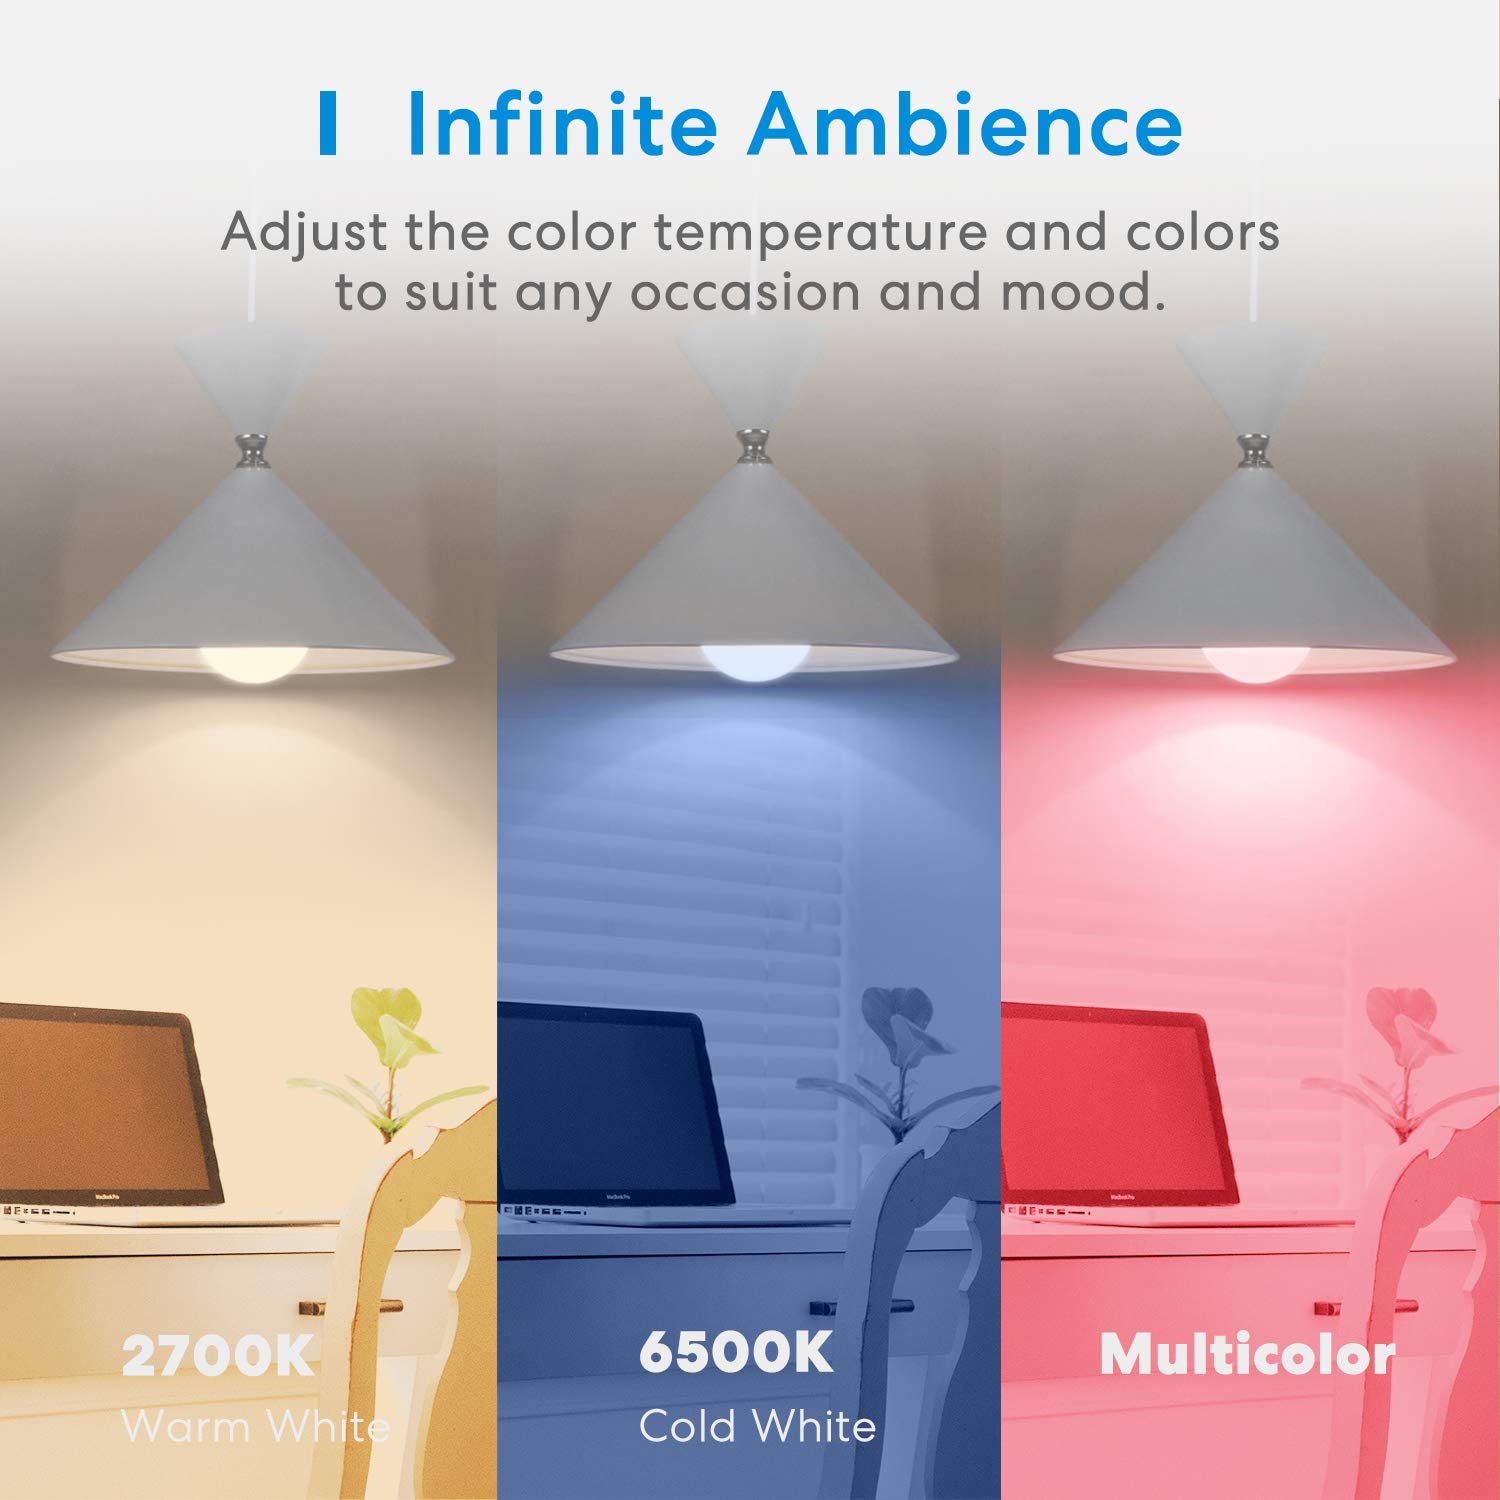 Ampoule connecté Meross 16 millions de couleurs – Votre partenaire hi-tech !